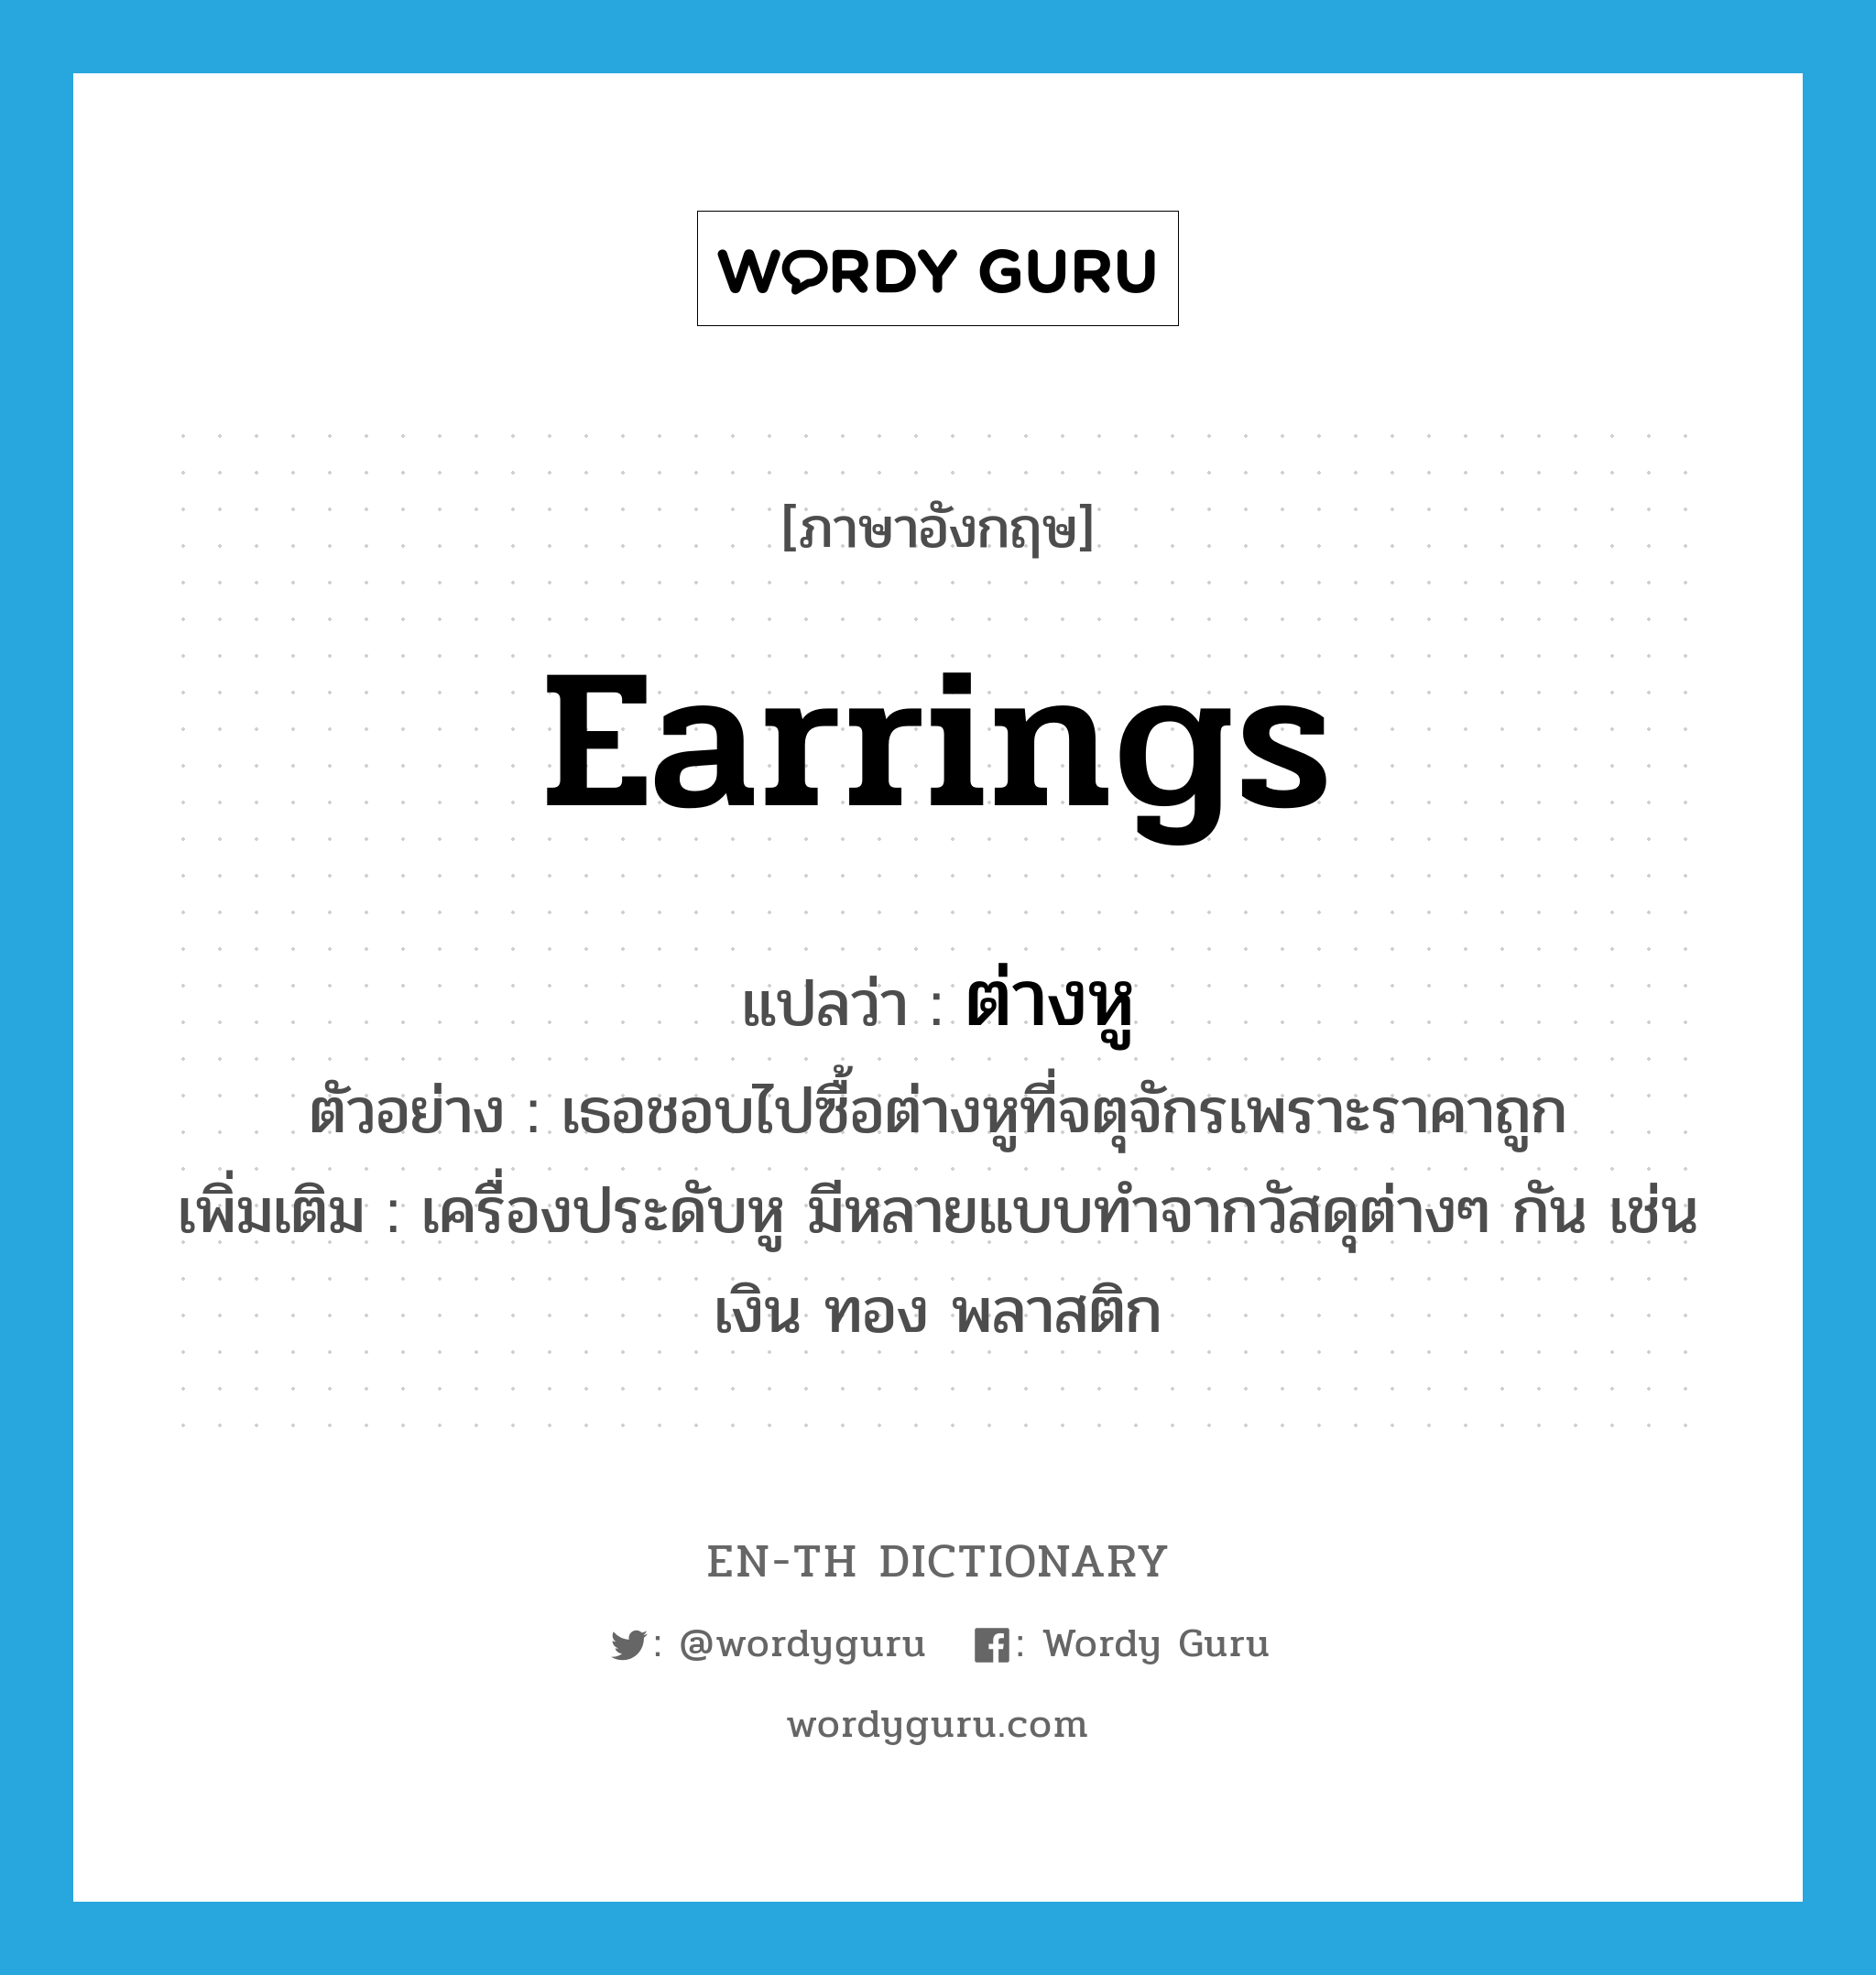 earrings แปลว่า?, คำศัพท์ภาษาอังกฤษ earrings แปลว่า ต่างหู ประเภท N ตัวอย่าง เธอชอบไปซื้อต่างหูที่จตุจักรเพราะราคาถูก เพิ่มเติม เครื่องประดับหู มีหลายแบบทำจากวัสดุต่างๆ กัน เช่น เงิน ทอง พลาสติก หมวด N